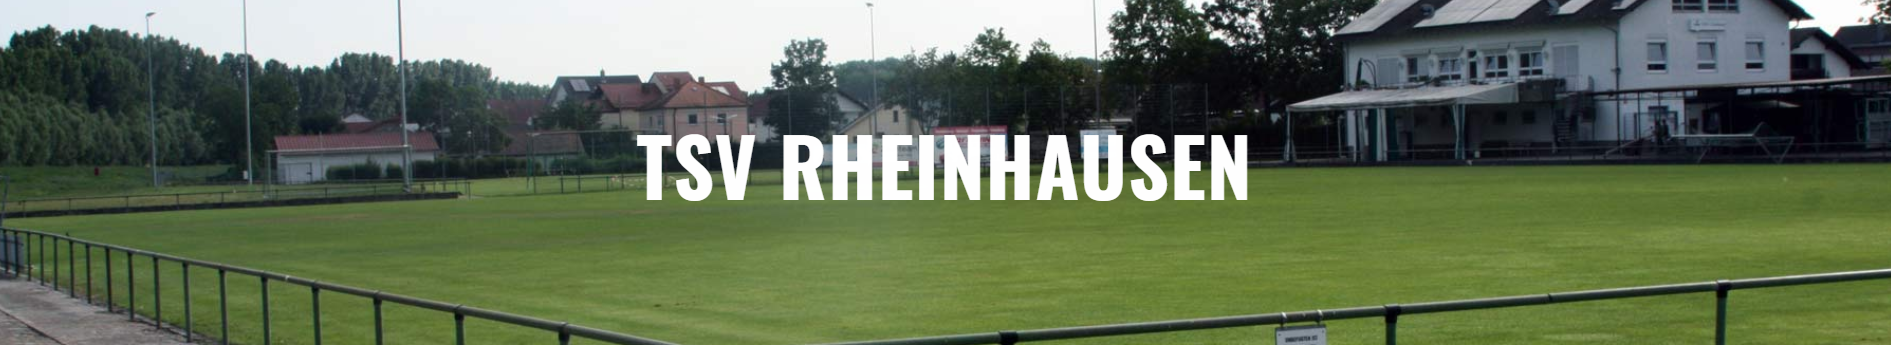 125 Jahre TSV Rheinhausen Title Image